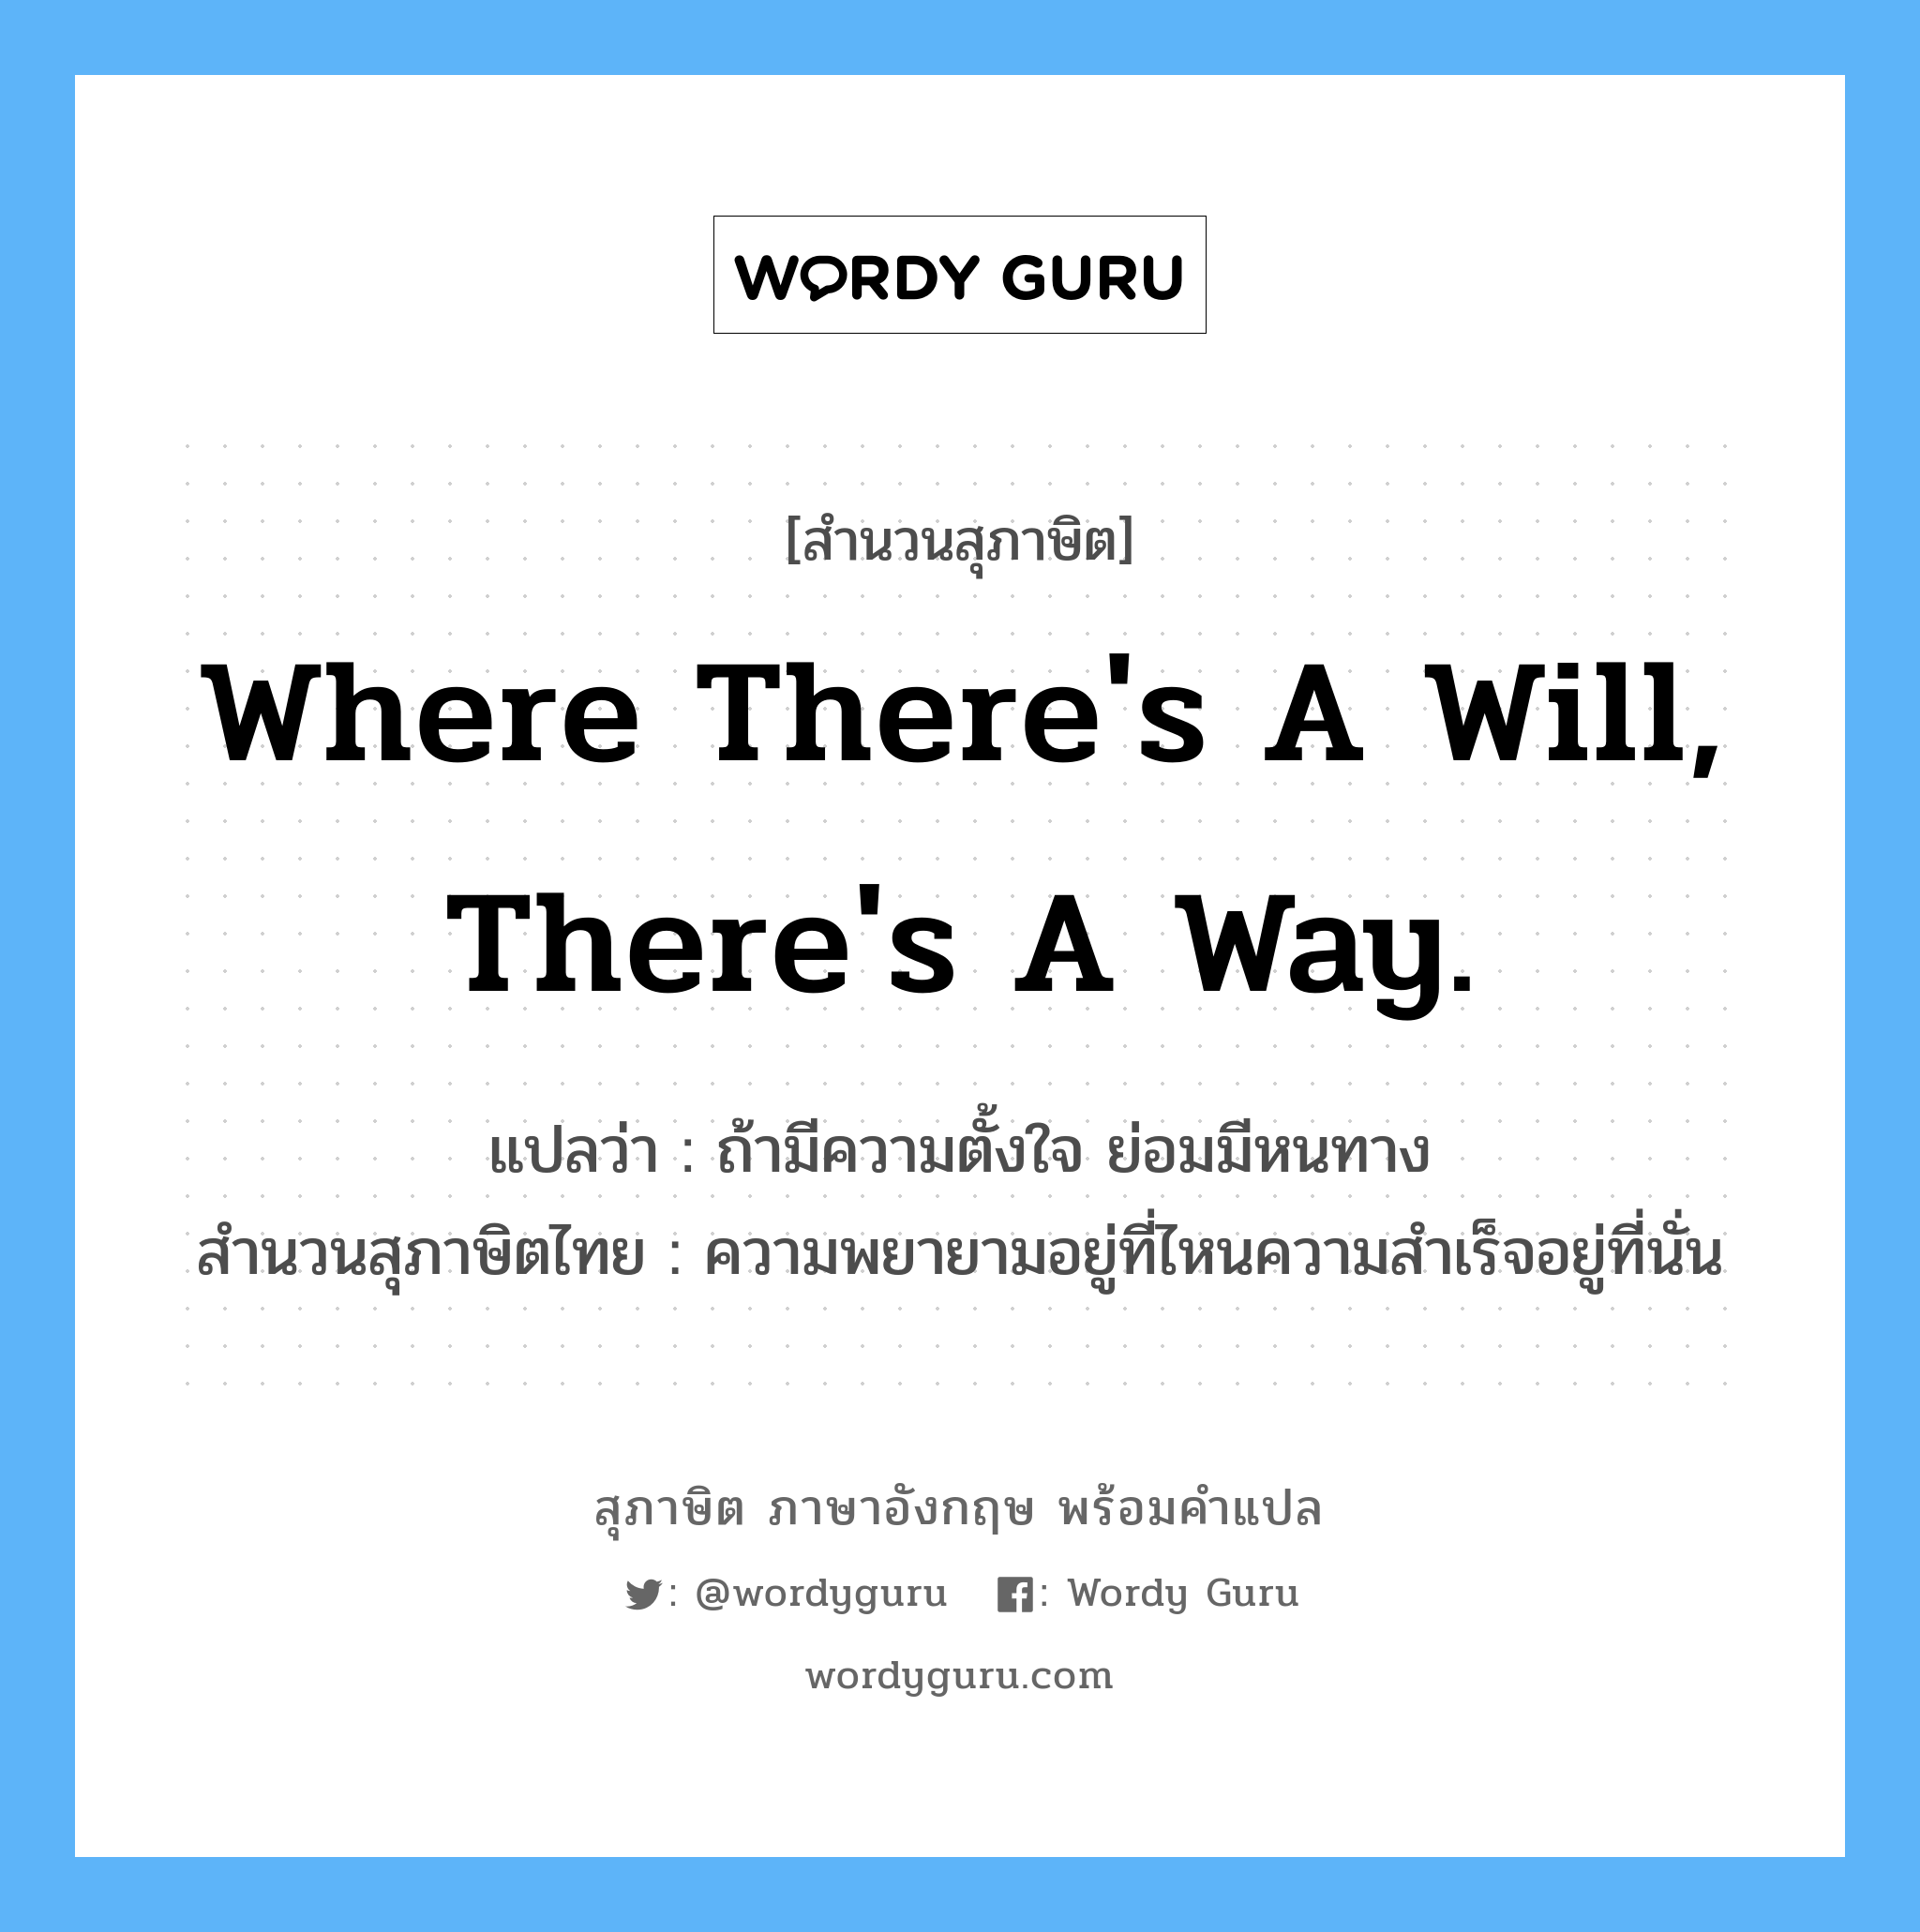 Where there's a will, there's a way. แปลว่า?, สำนวนสุภาษิต ภาษาอังกฤษ Where there's a will, there's a way. แปลว่า ถ้ามีความตั้งใจ ย่อมมีหนทาง สำนวนสุภาษิตไทย ความพยายามอยู่ที่ไหนความสำเร็จอยู่ที่นั่น